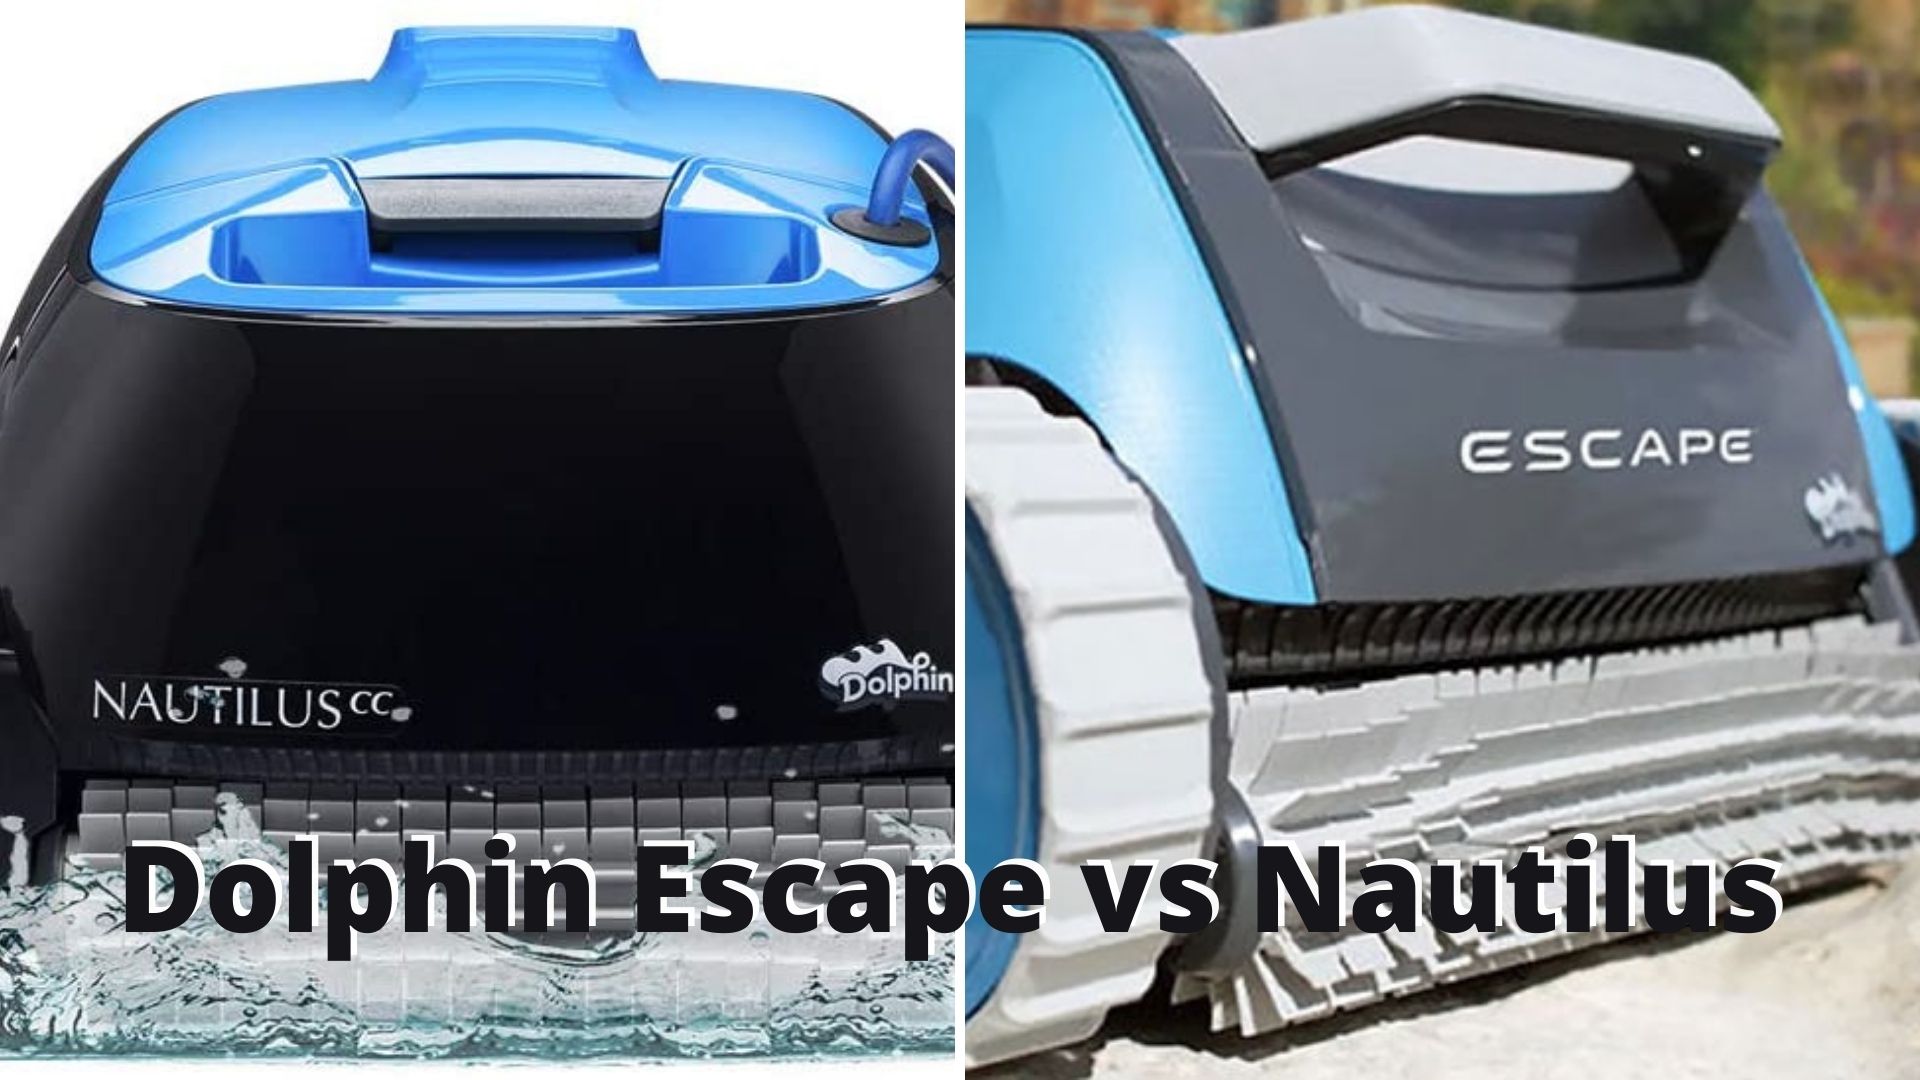 Dolphin Escape vs Nautilus Comparison